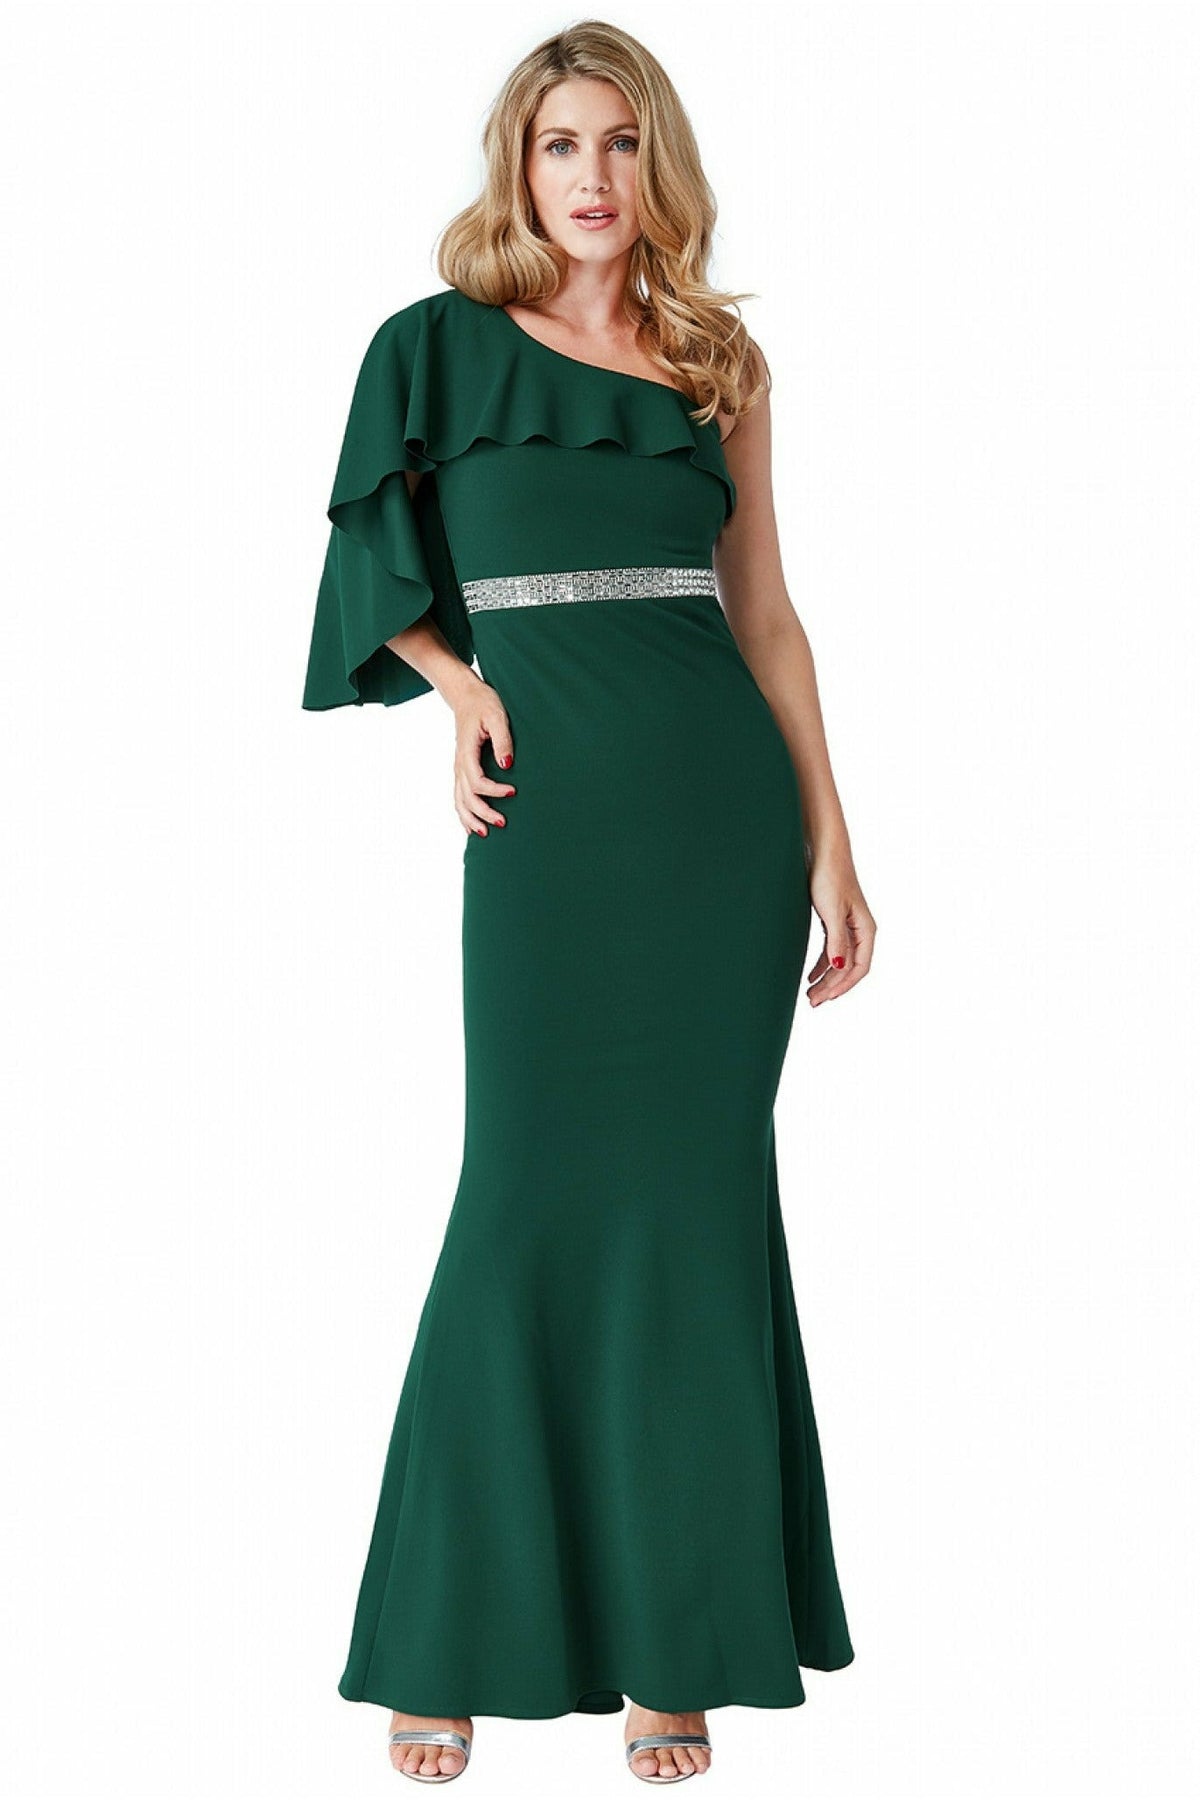 Off The Shoulder Flair Maxi Dress - Emerald DR1793